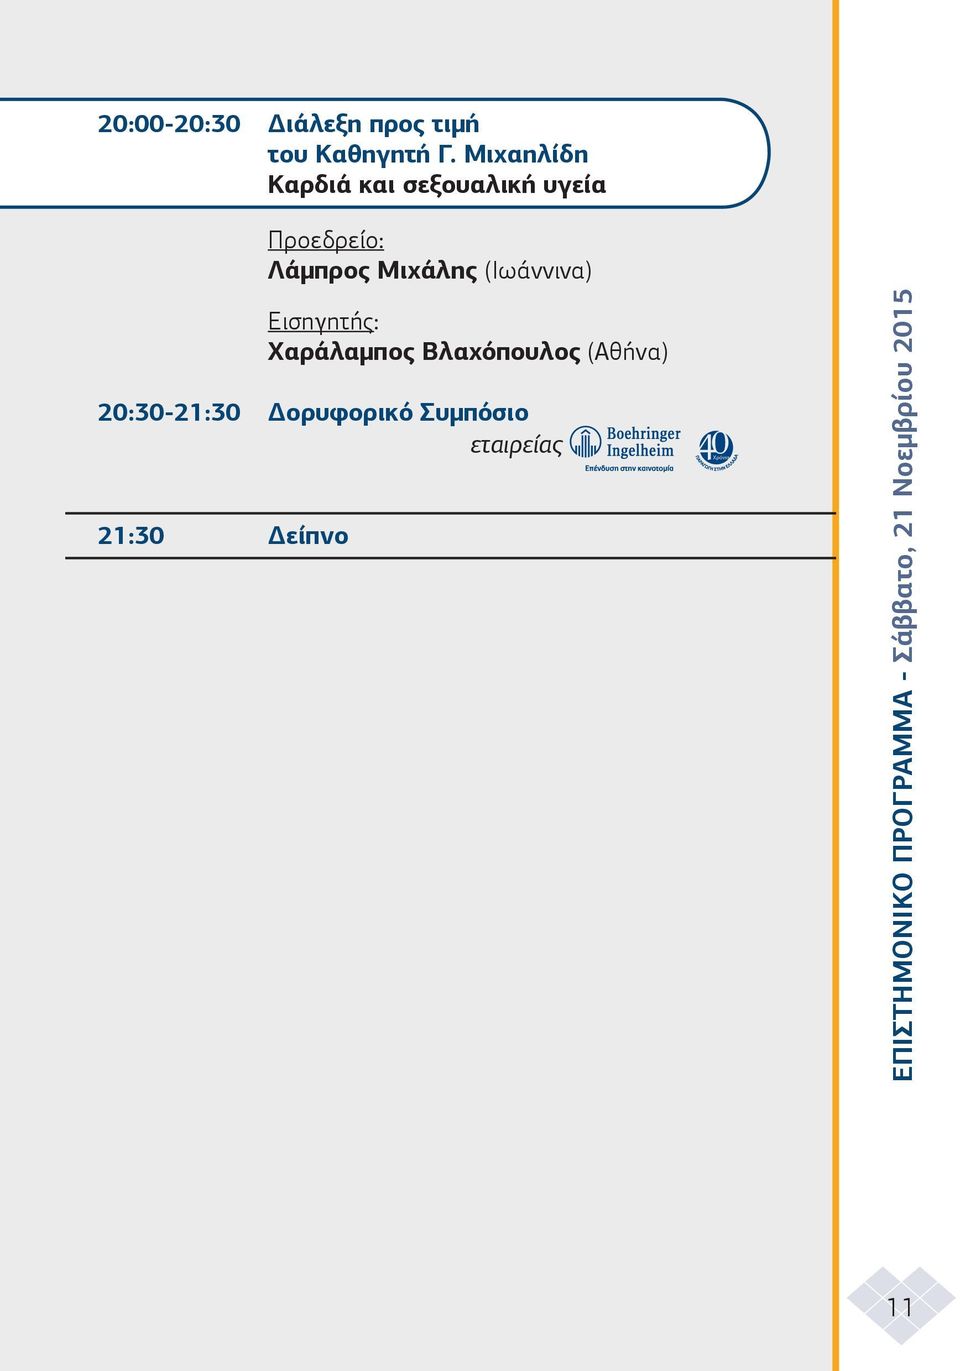 Εισηγητής: Χαράλαµπος Βλαχόπουλος (Αθήνα) 20:30-21:30 ορυφορικό